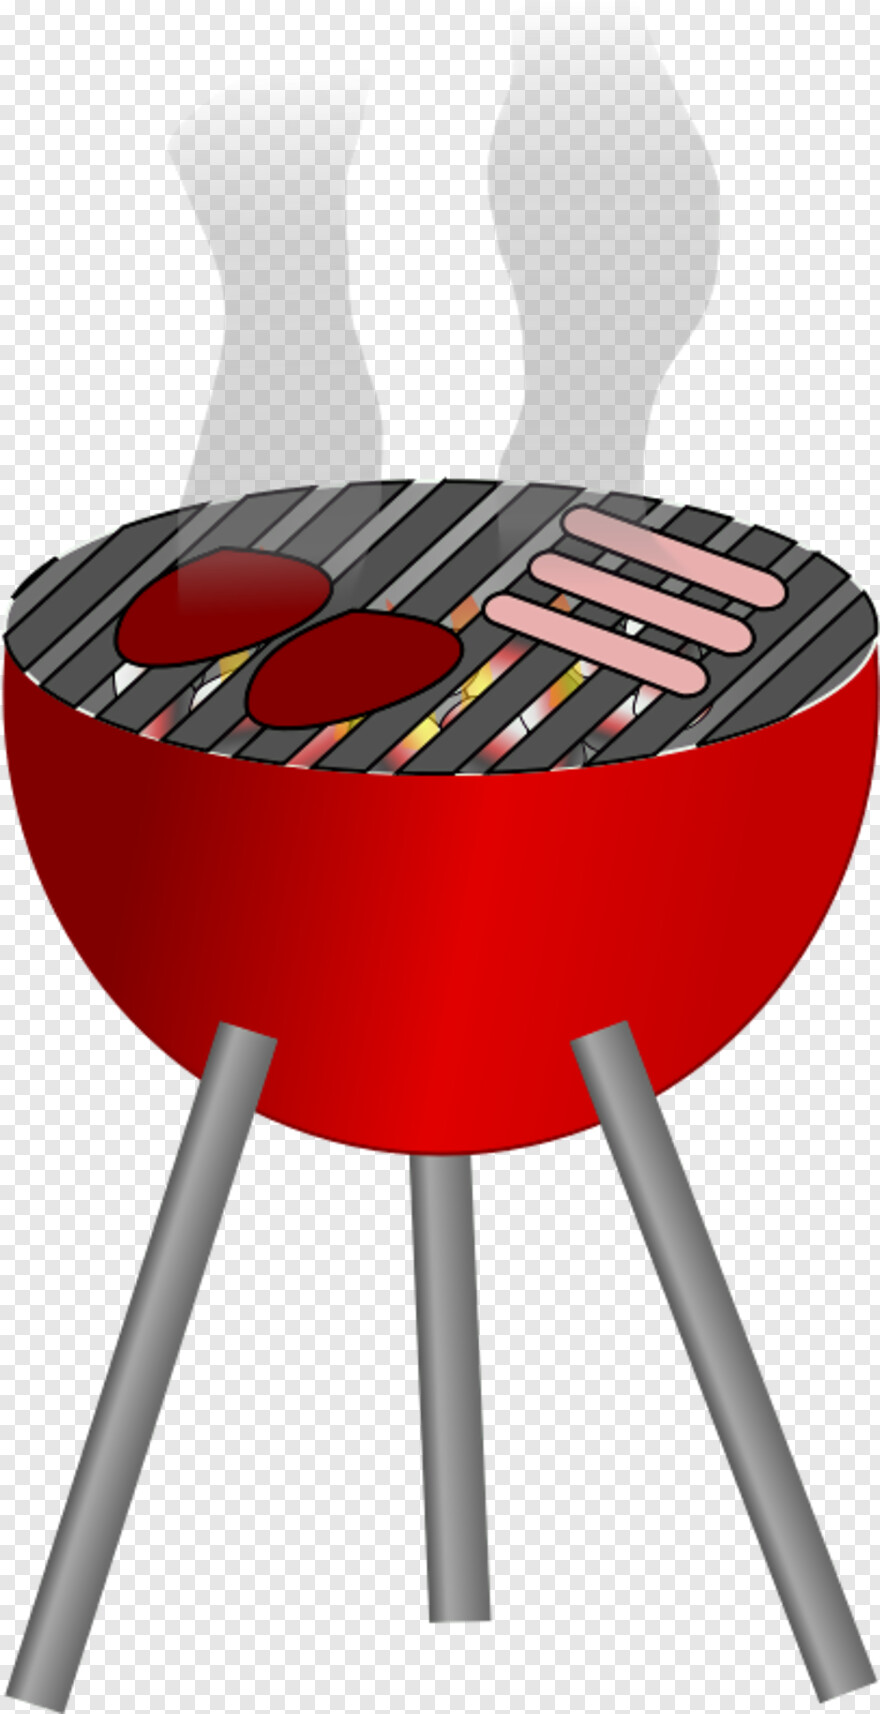 bbq-grill # 404533